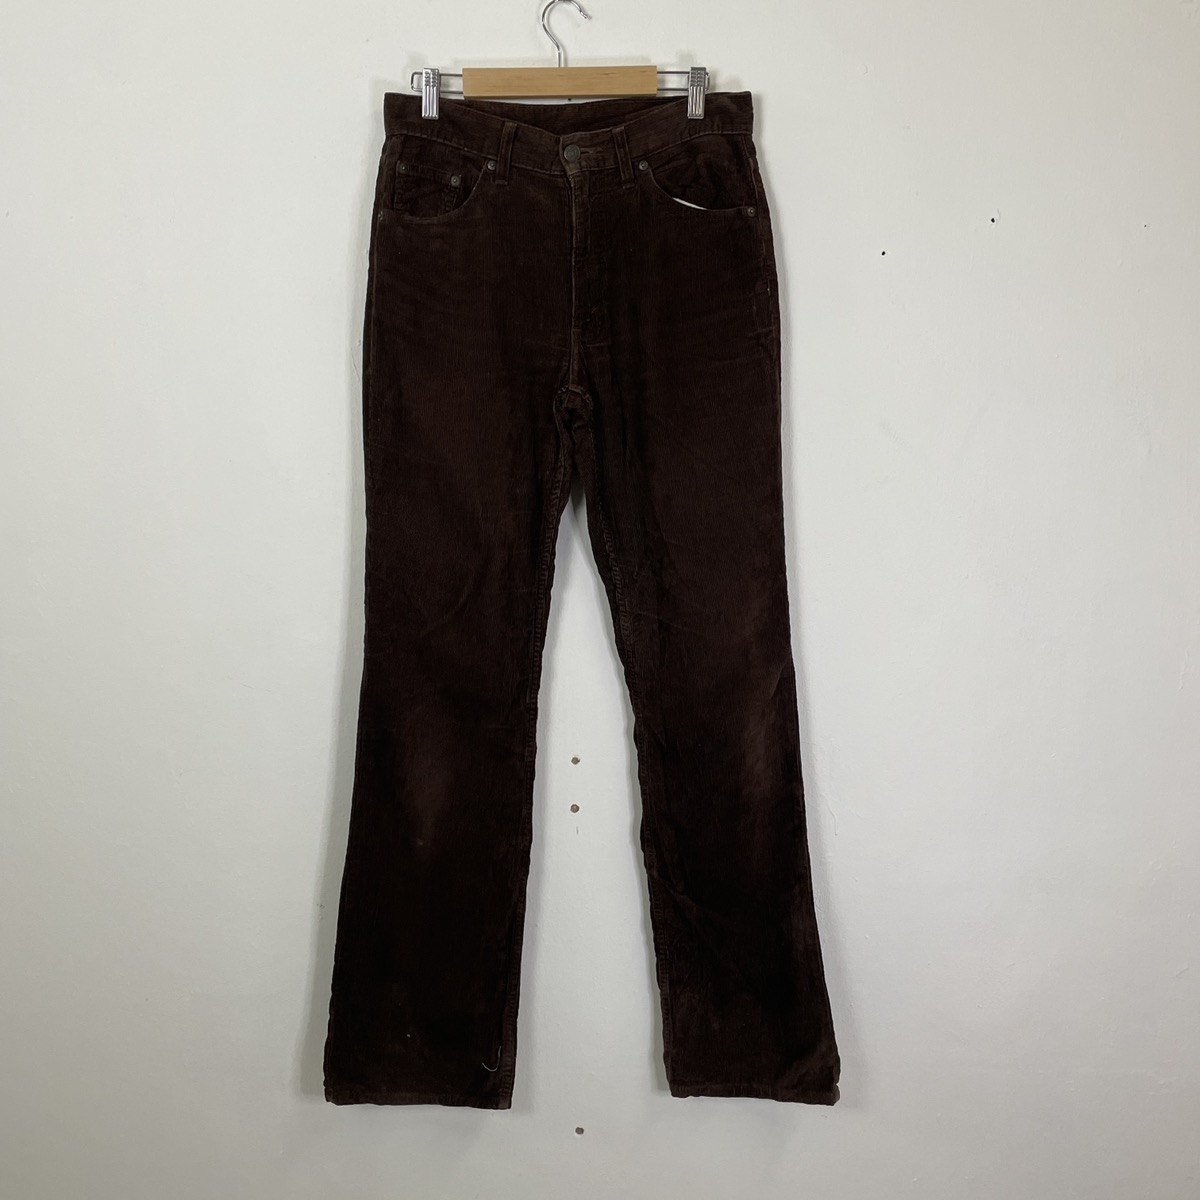 Vintage Levis Corduroy Pants - 1